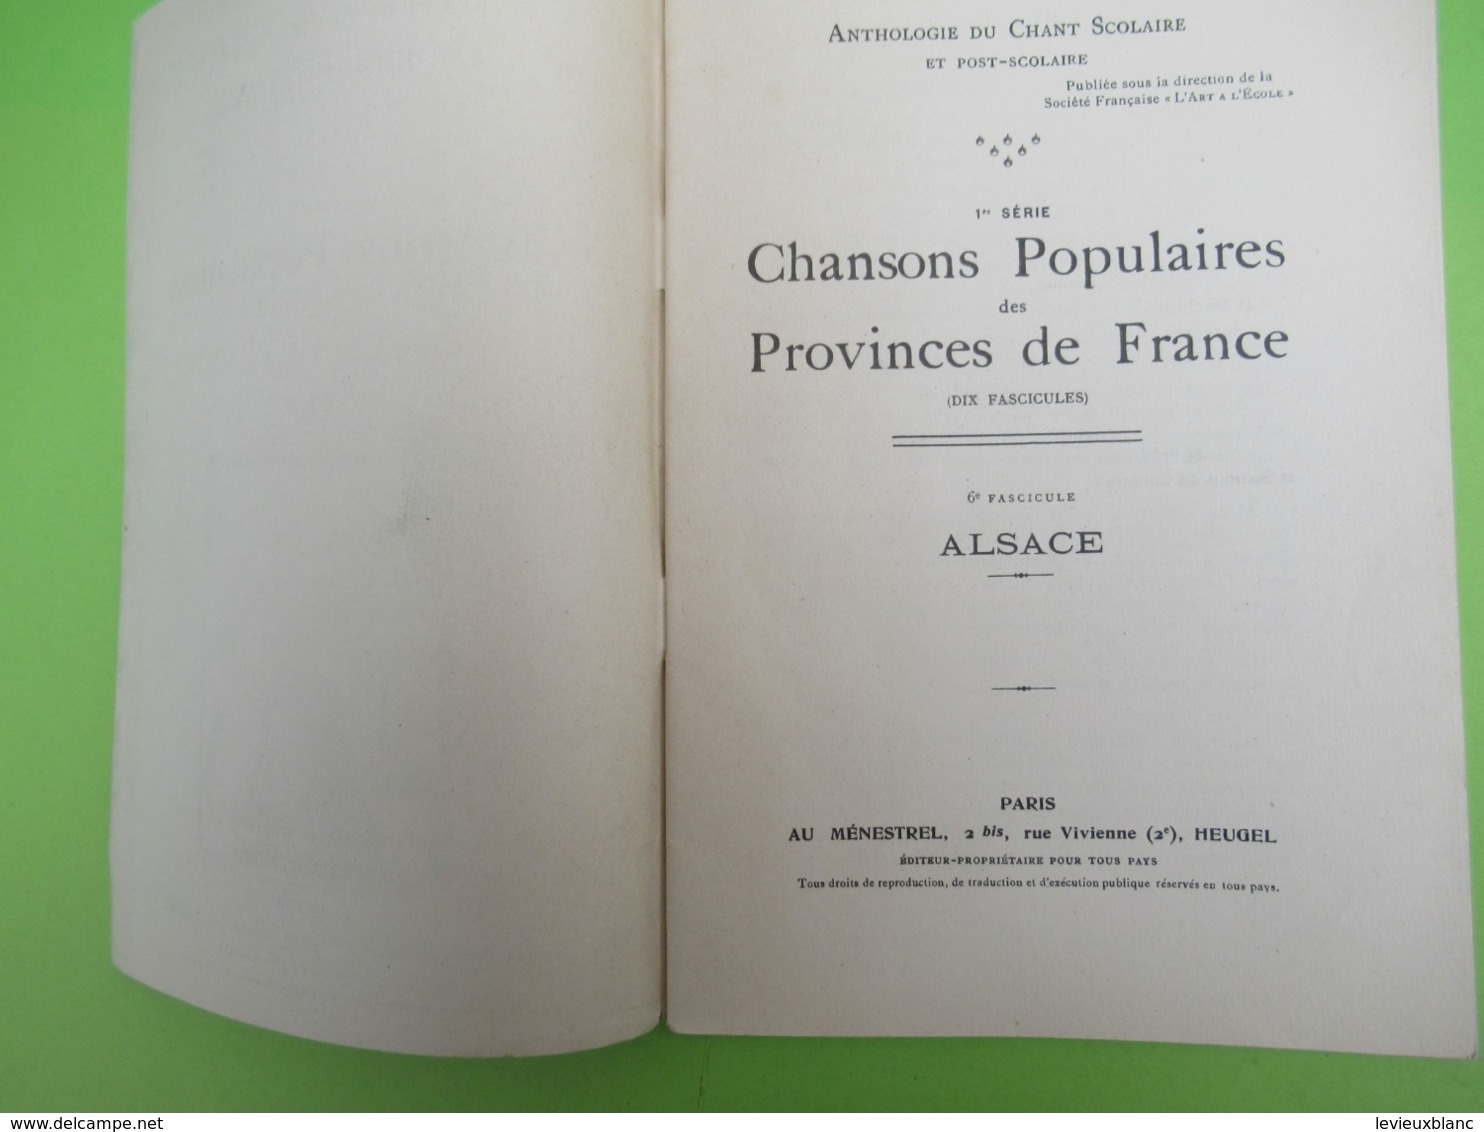 Livre /Anthologie Du Chant Scolaire Et Post-Scolaire/Chansons Populaires Des Provinces De France.ALSACE/1926    PART276 - Muziek